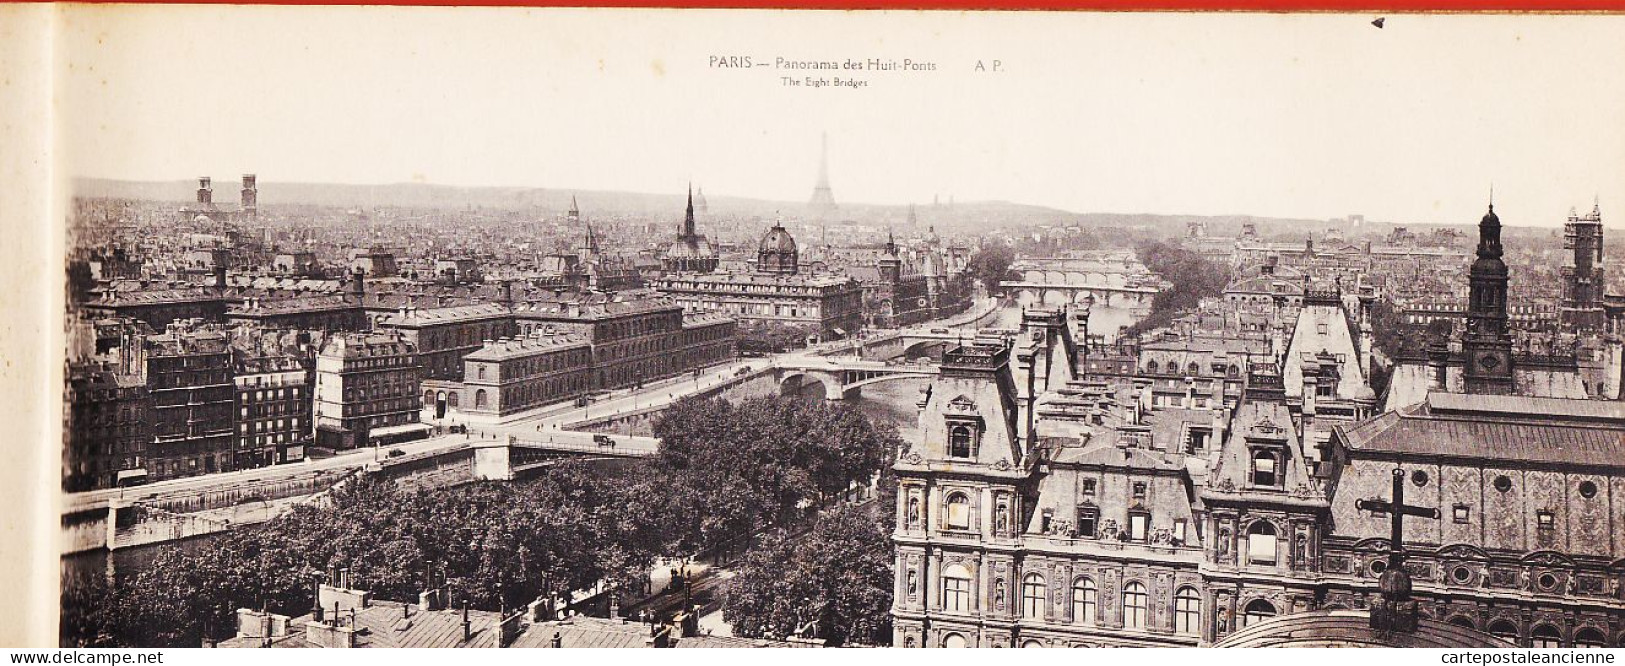 35689 / PARIS 1920 Album Complet De Vues Artistiques Et Panoramique  30x12 Cm Notices English French PAPEGHIN - Panorama's